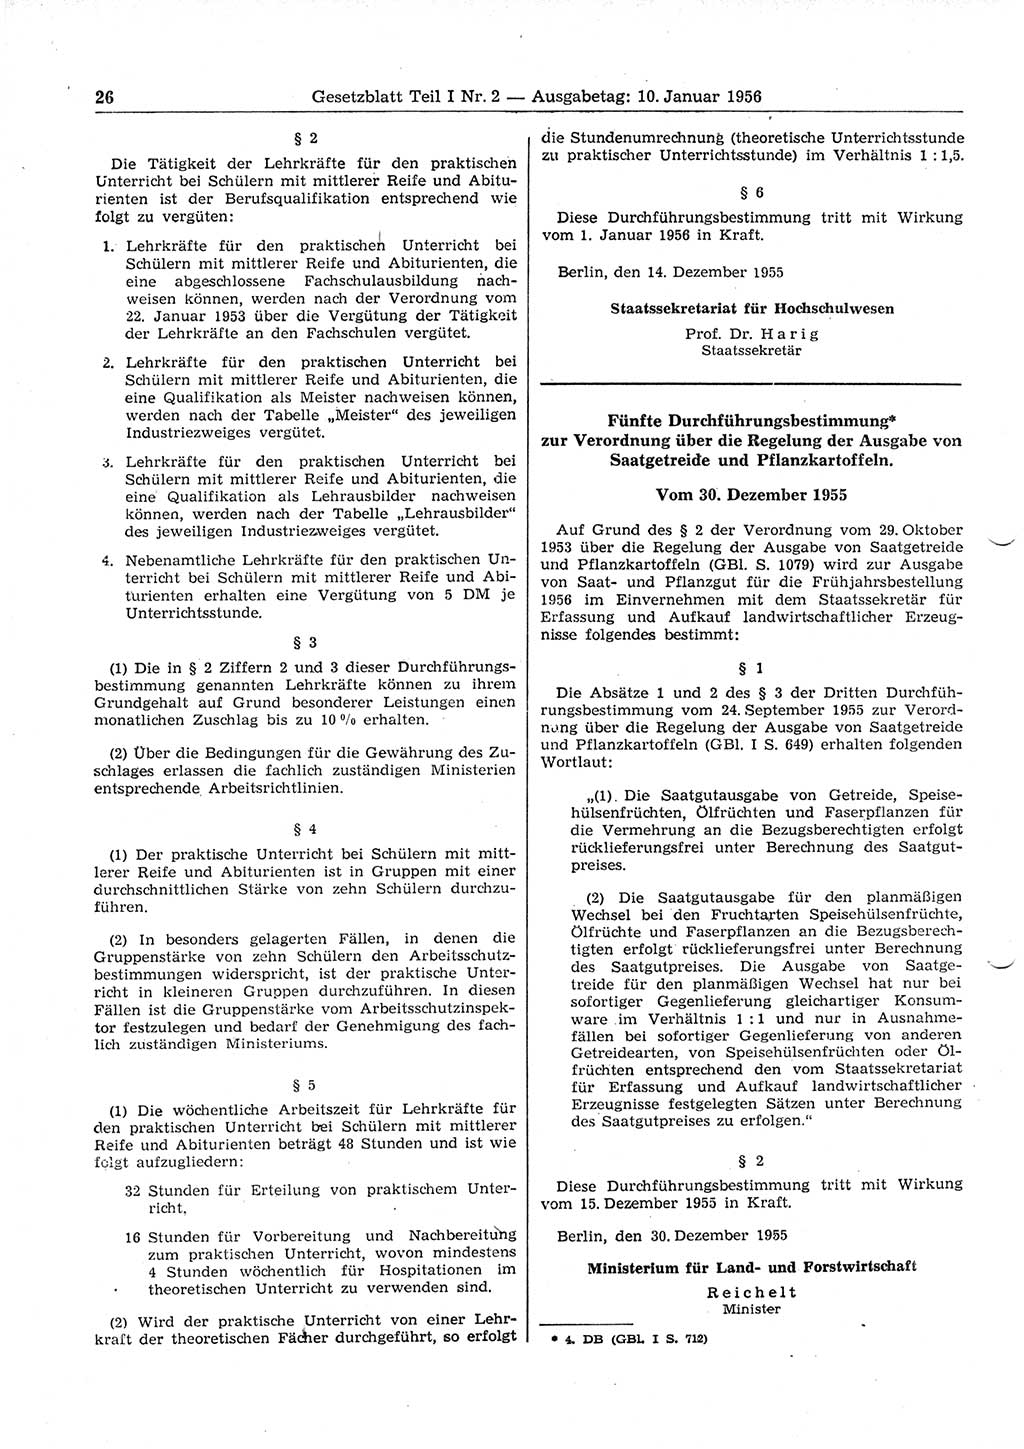 Gesetzblatt (GBl.) der Deutschen Demokratischen Republik (DDR) Teil Ⅰ 1956, Seite 26 (GBl. DDR Ⅰ 1956, S. 26)